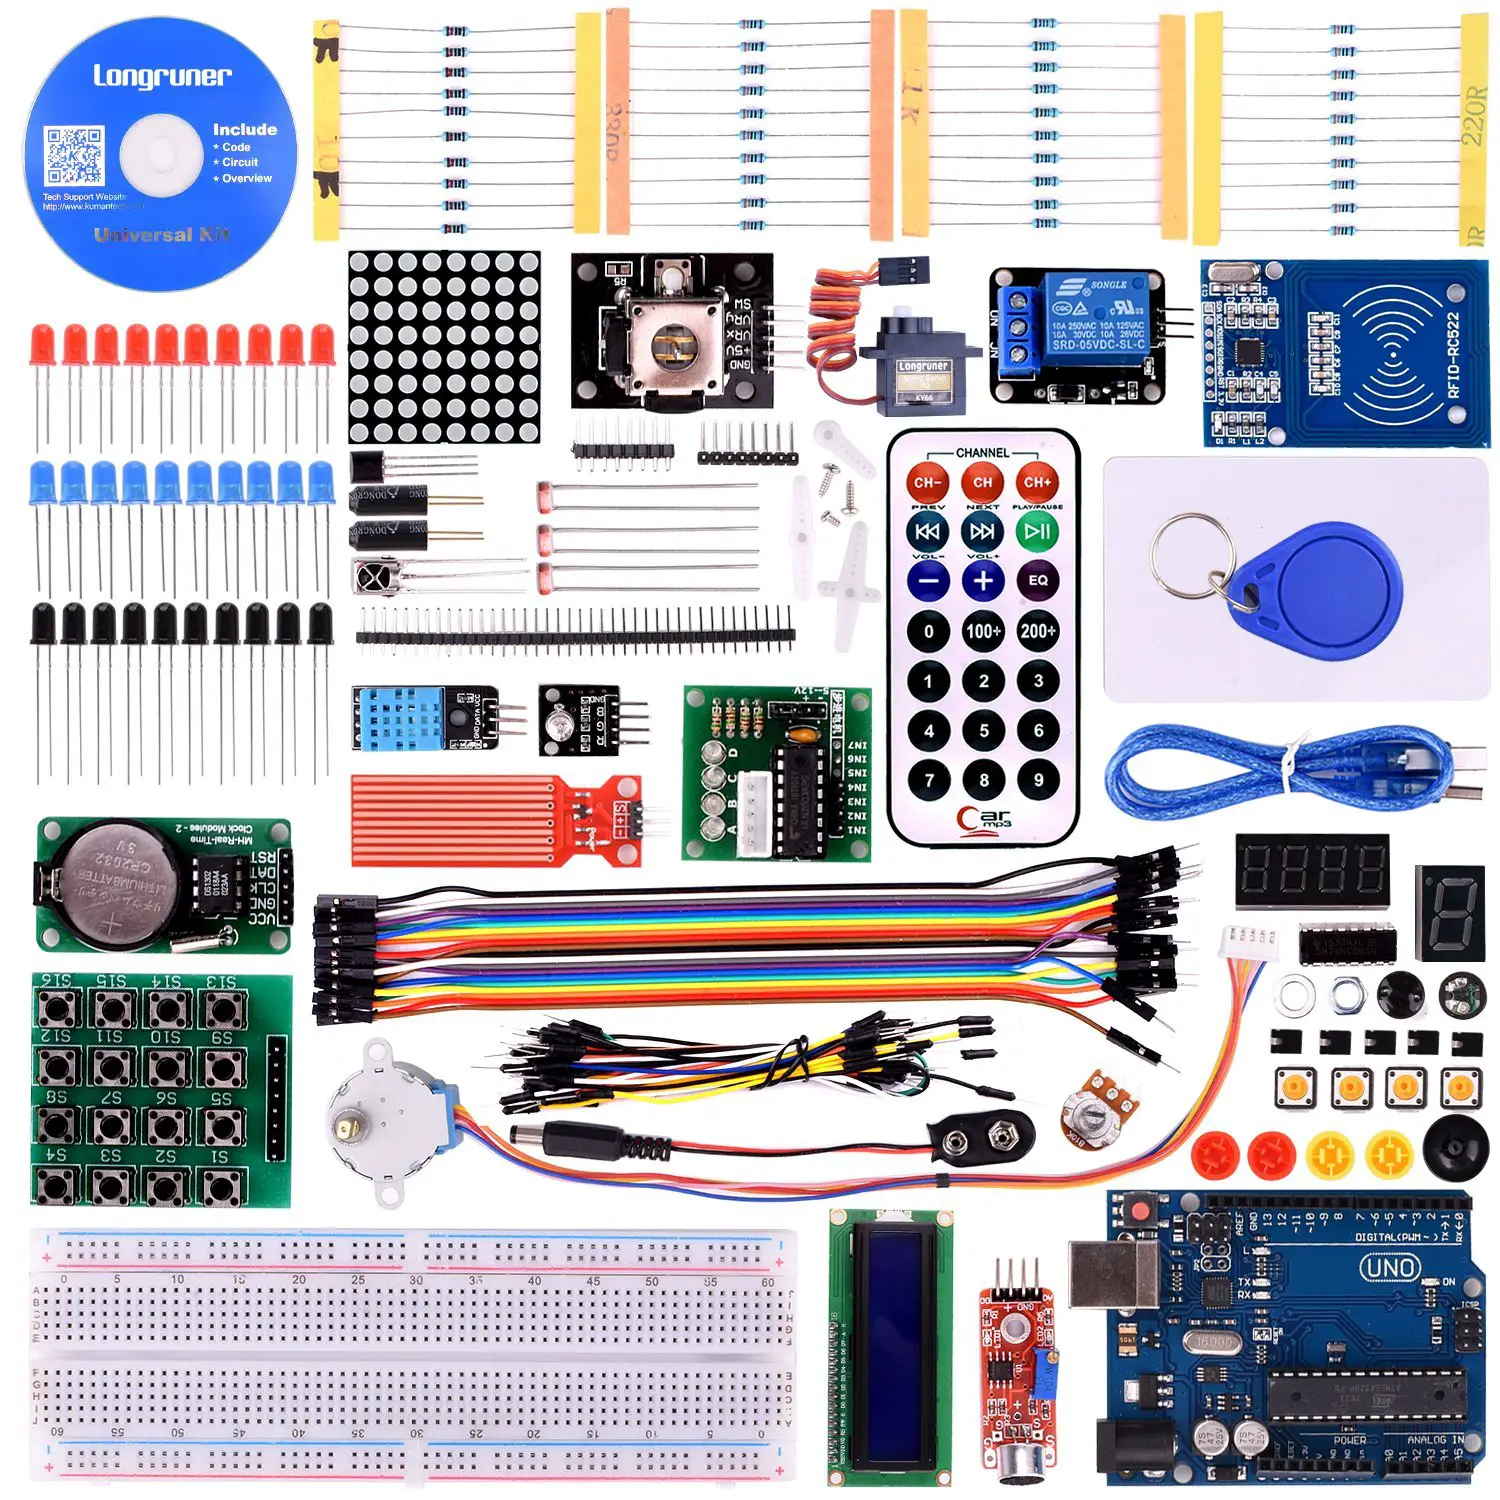 8 Best Arduino Starter Kit for Beginner - Arduino UNO R3 Kit, Components